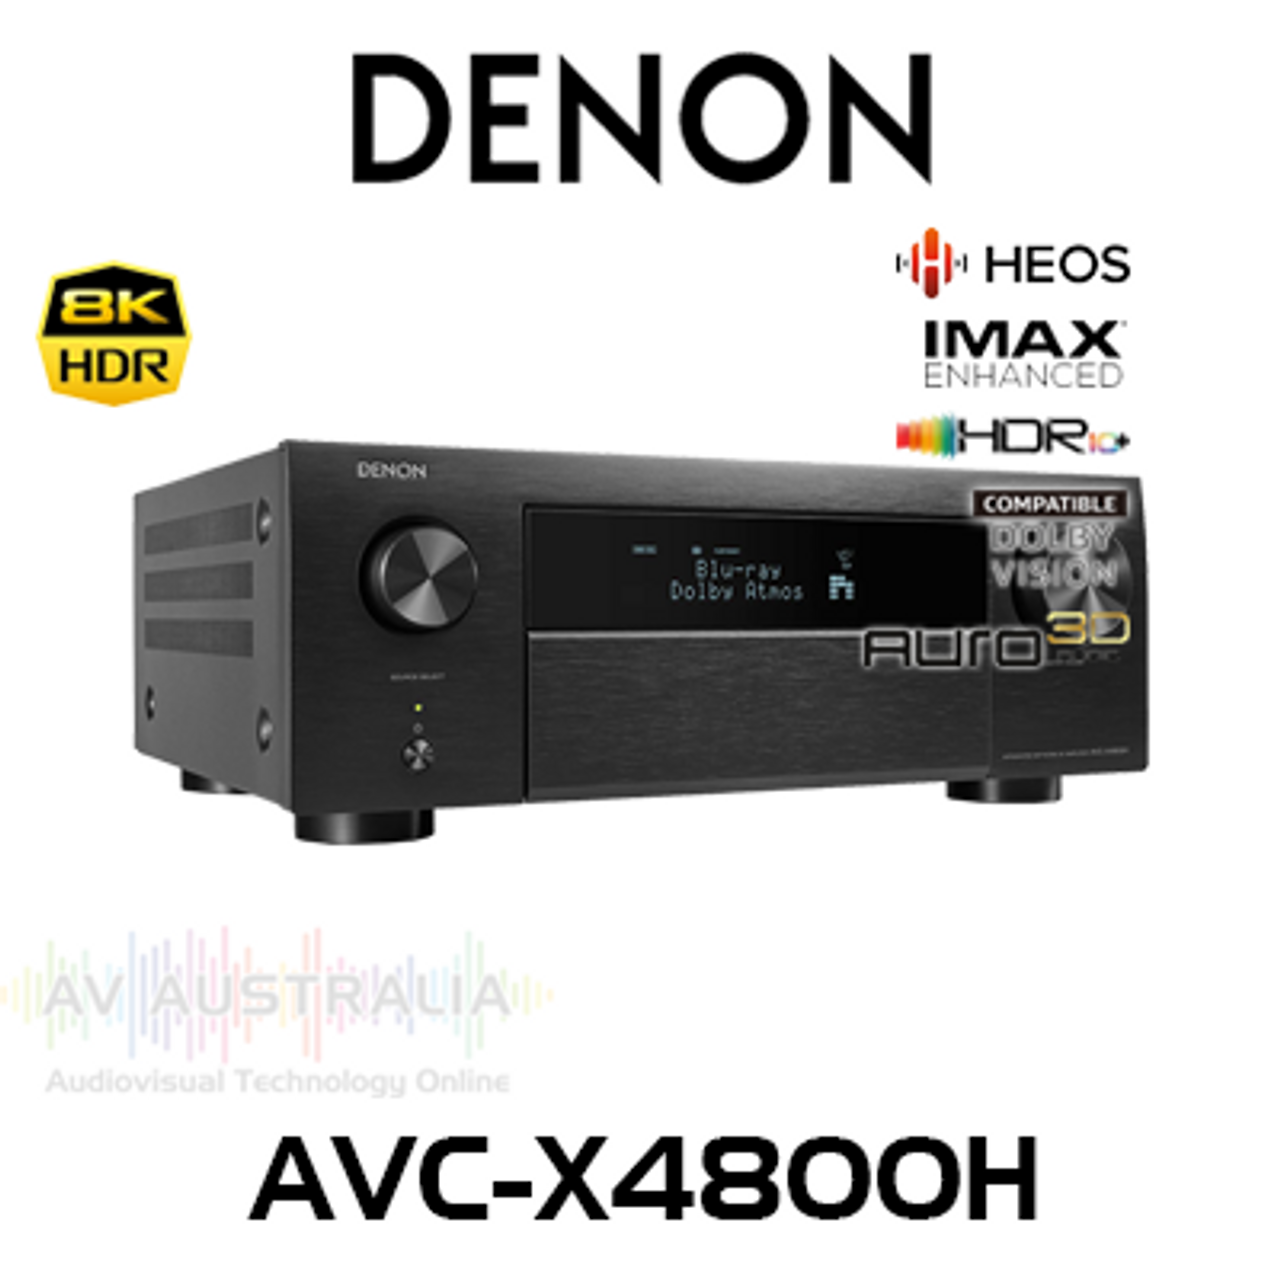 Denon AVC-X4800H 9.4-Ch 8K HDR IMAX Enhanced AV Receiver with Auro 3D & HEOS Built-in